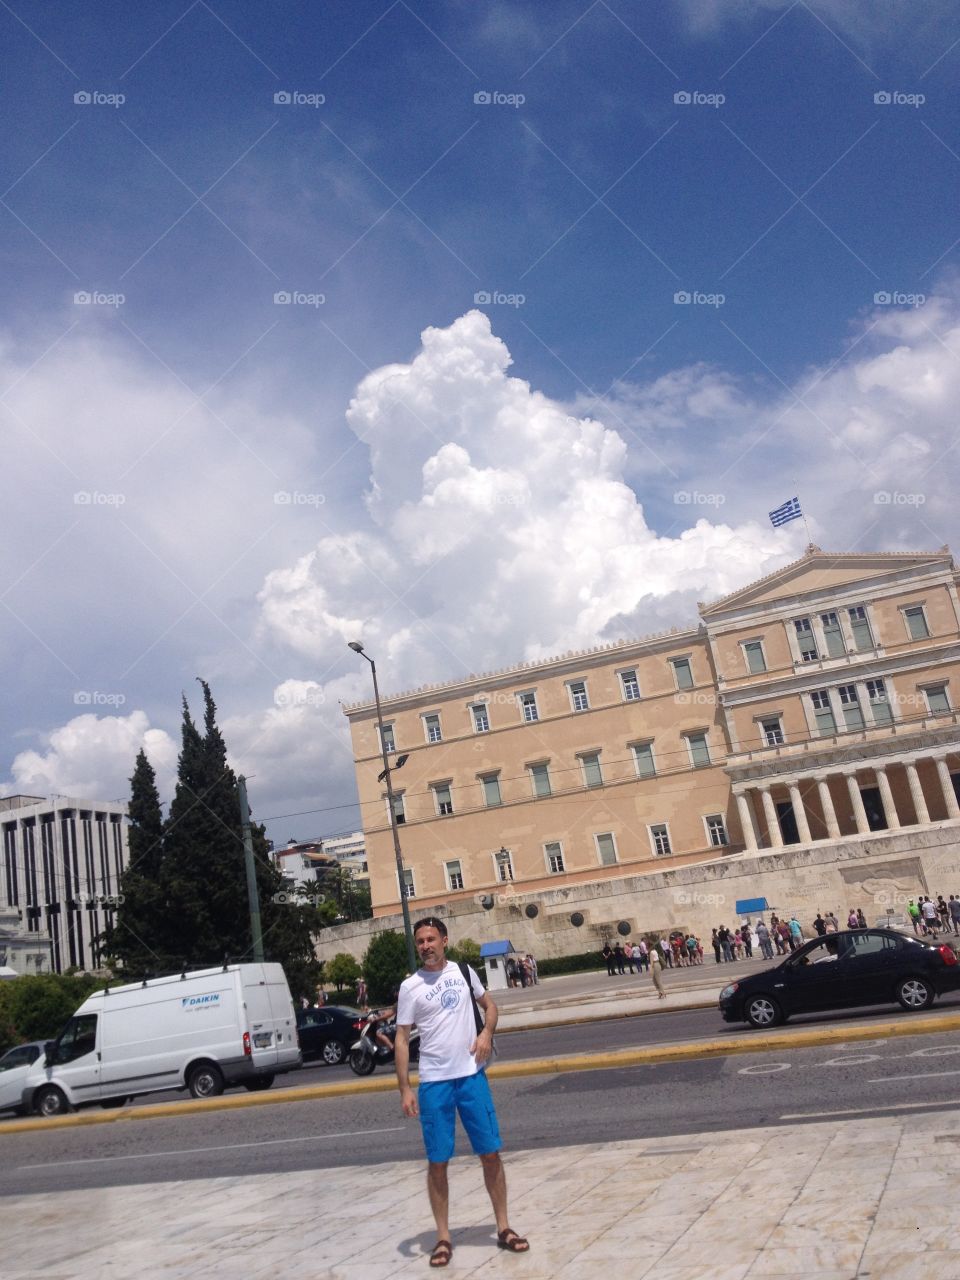 Athens city center 